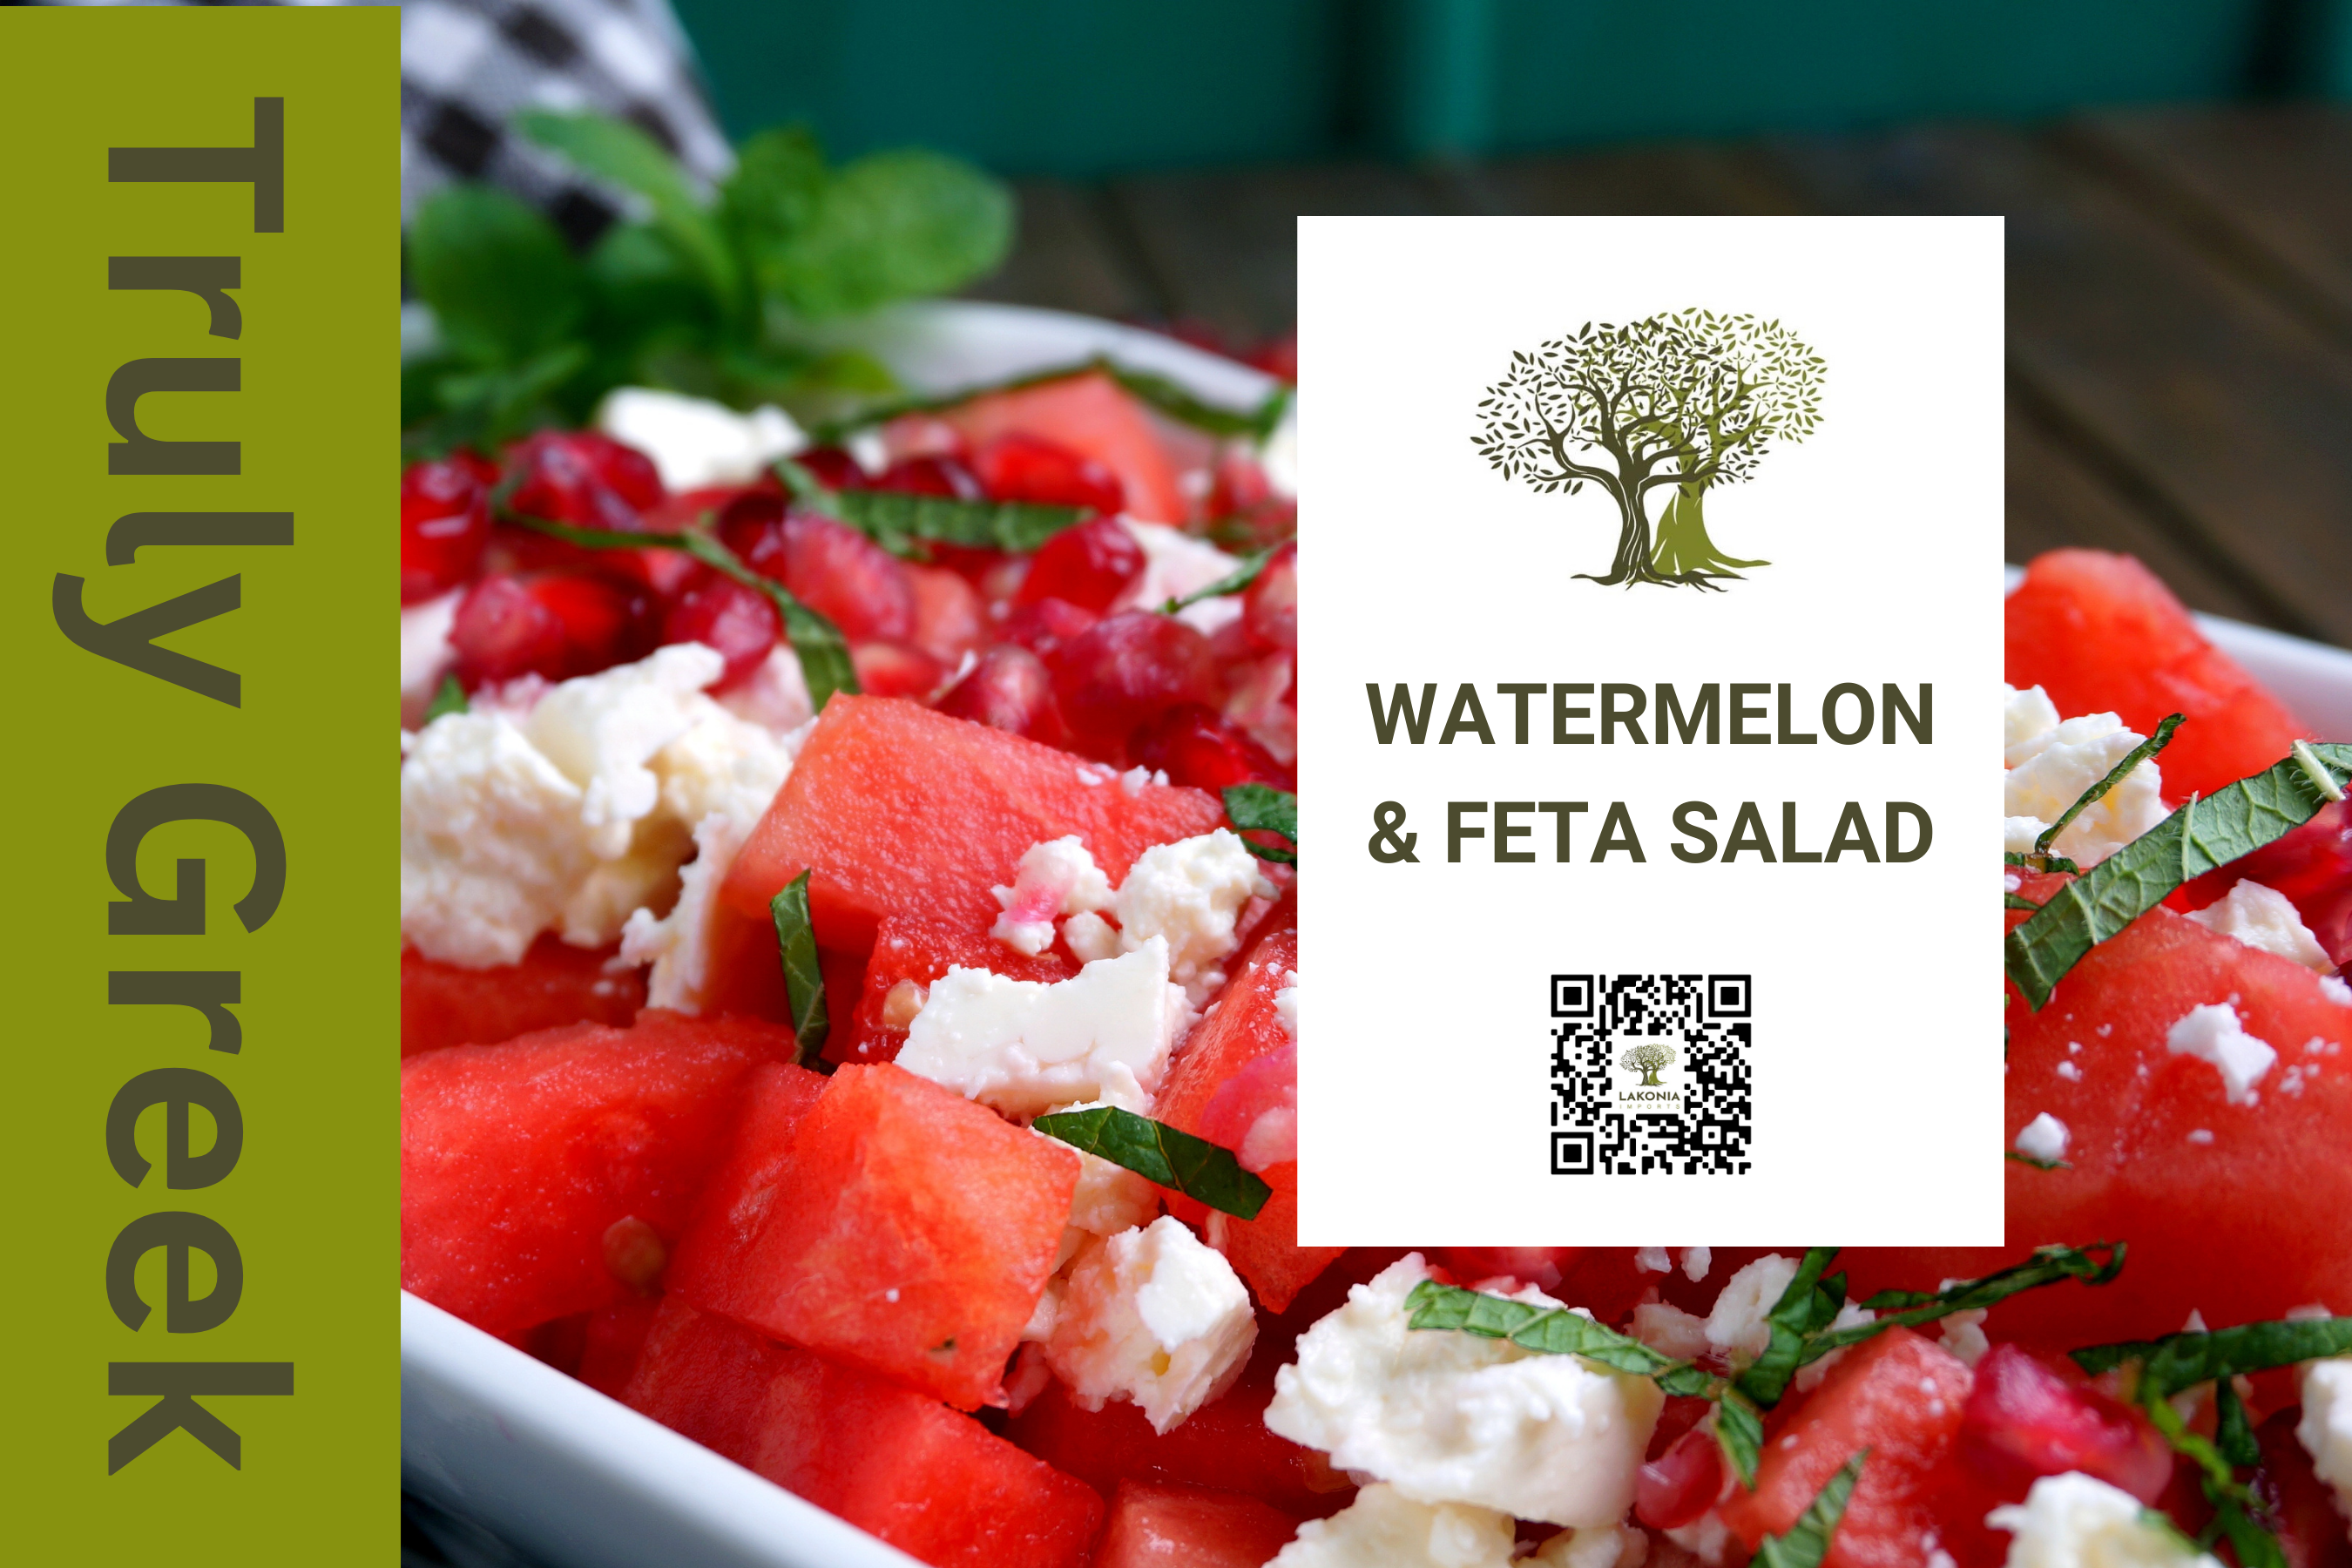 Watermelon & Feta Salad - Truly Greek